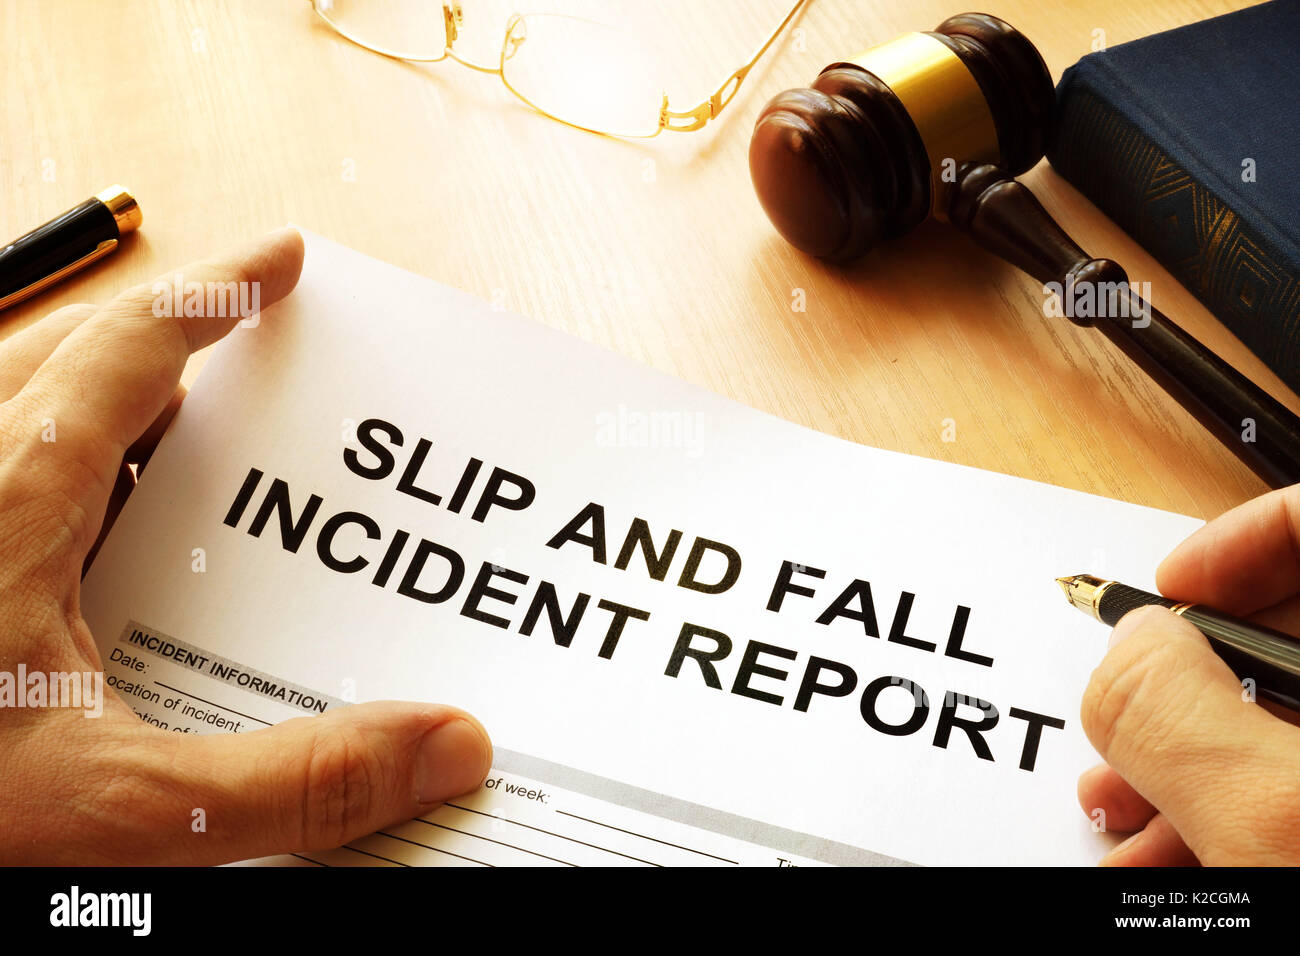 Ausrutschen und hinfallen Verletzung Report auf einen Tisch. Stockfoto